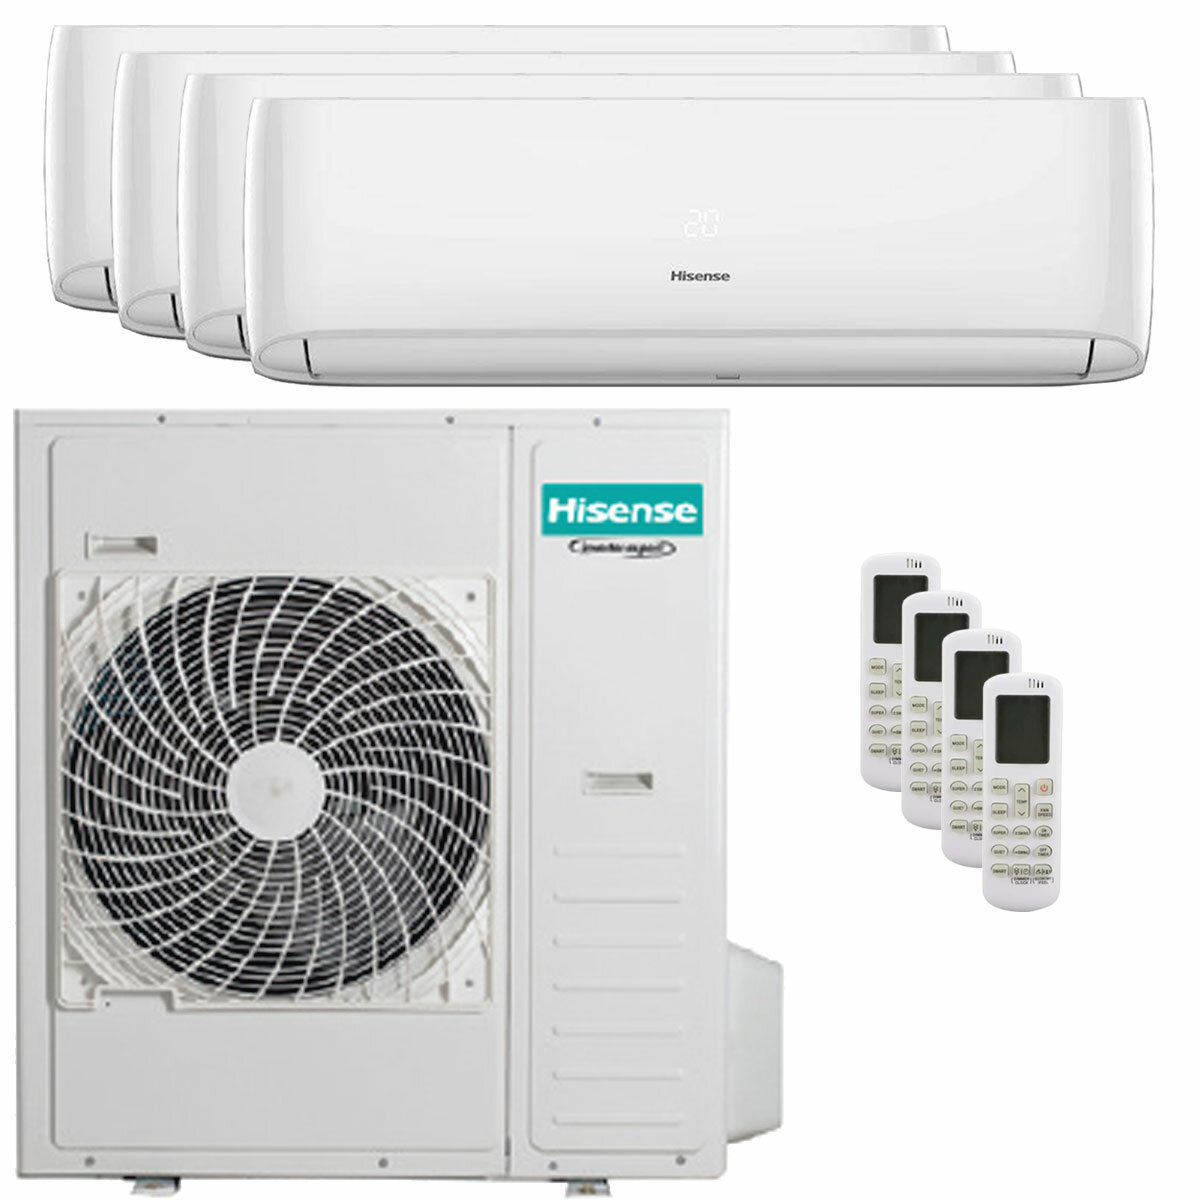 Hisense Hi-Comfort quadri split air conditioner 7000 + 9000 + 9000 + 24000 BTU wifi inverter outdoor unit 12.5 kW